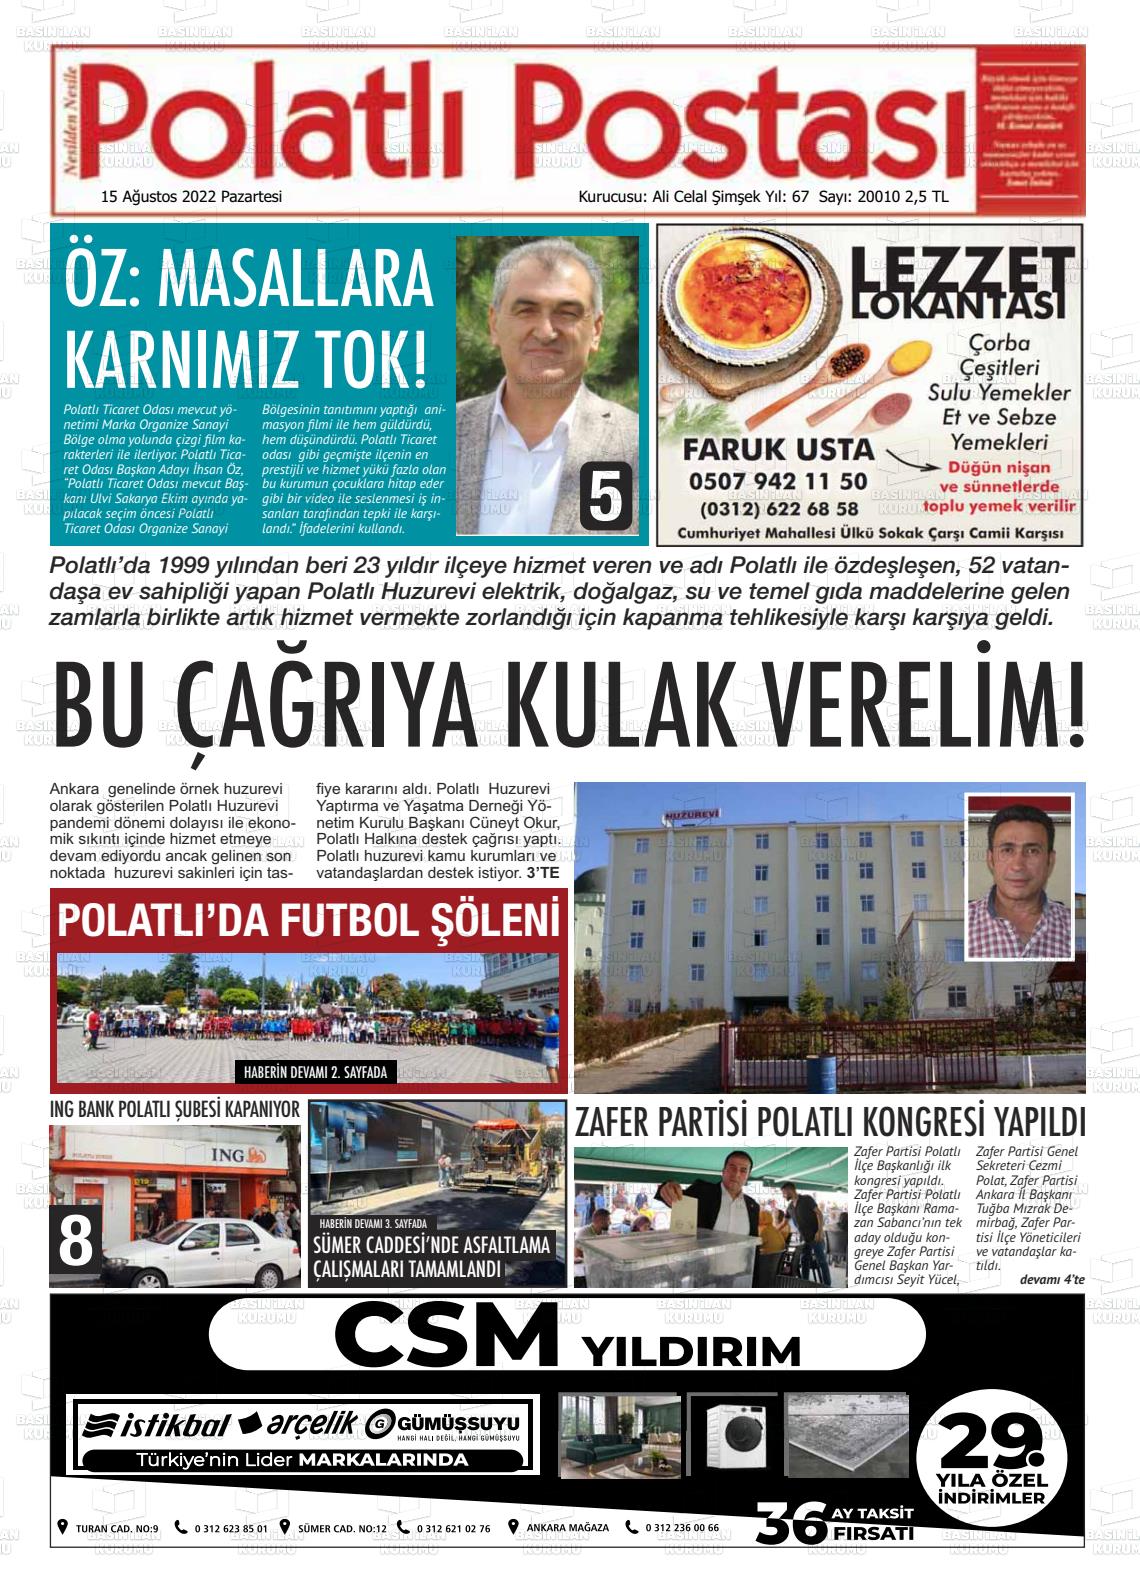 15 Ağustos 2022 Polatlı Postası Gazete Manşeti